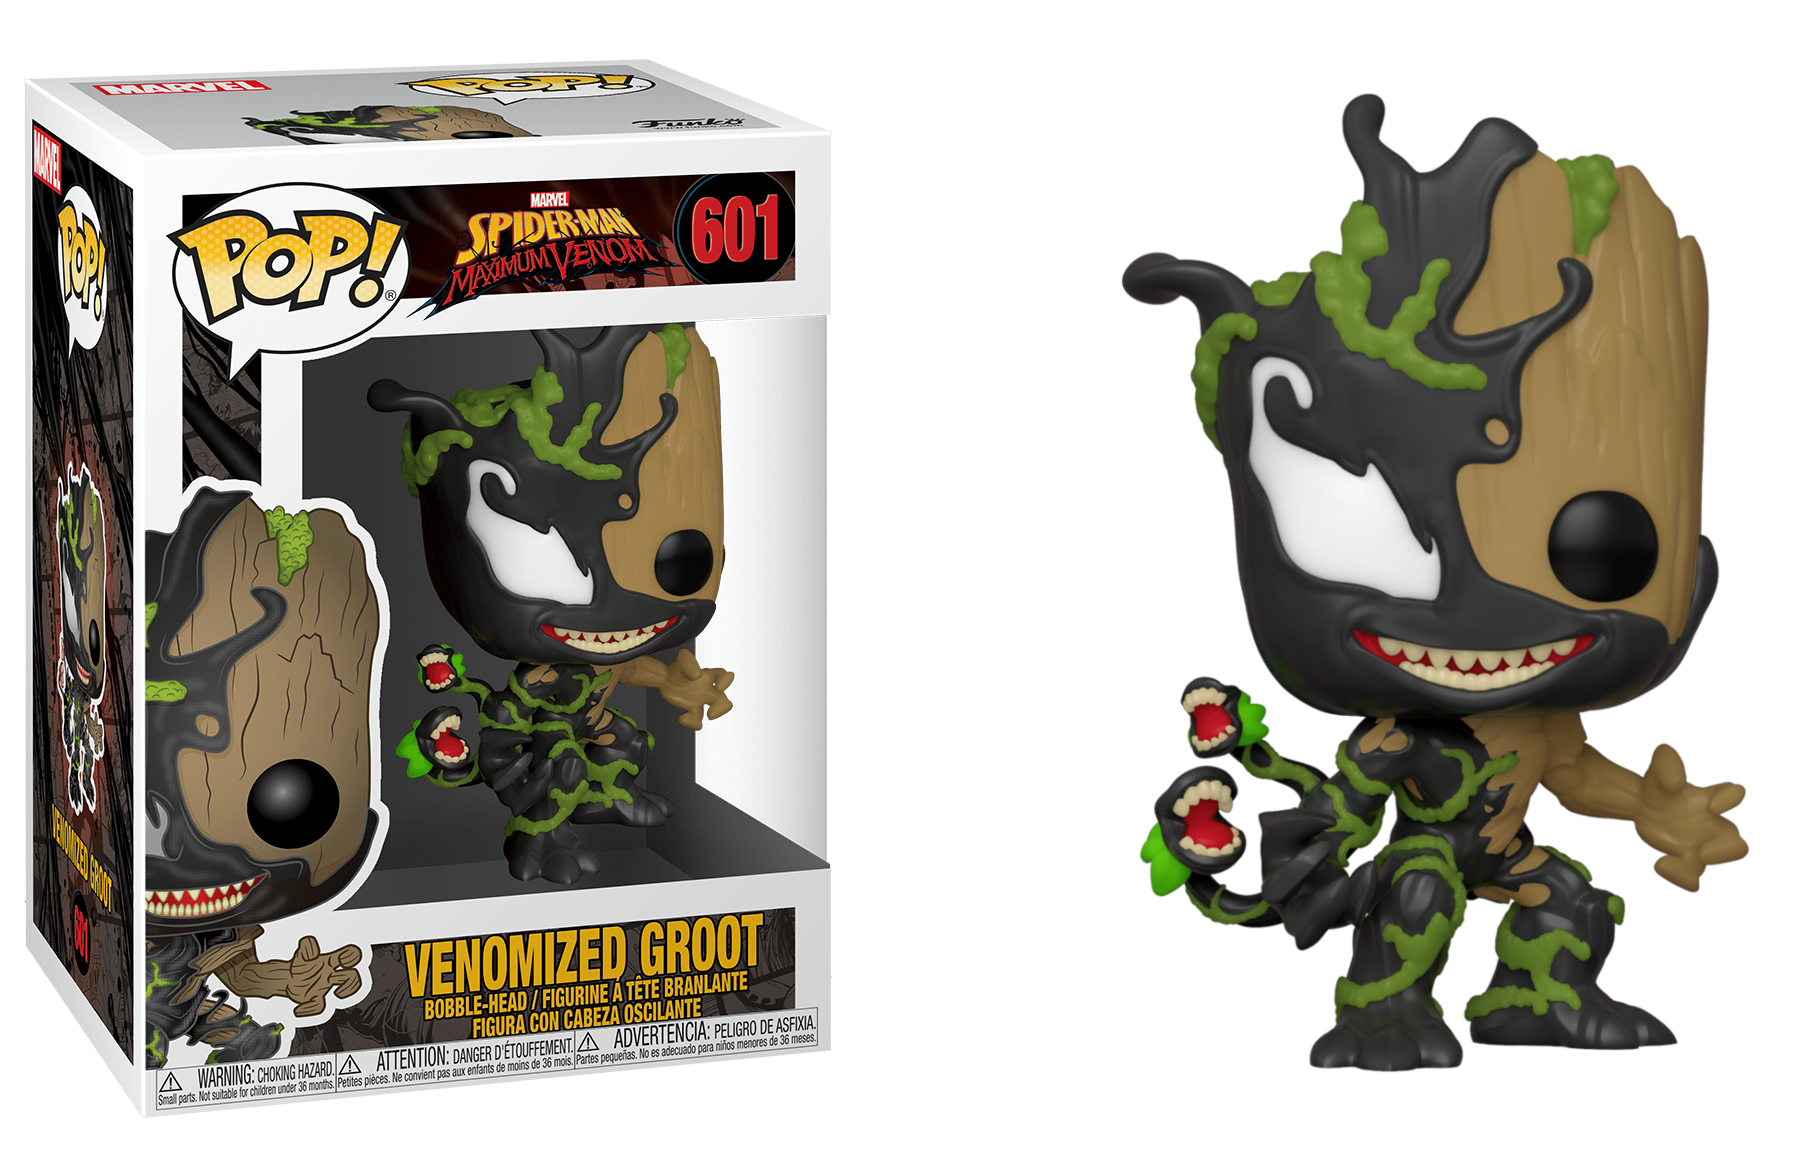 Funko Pop! Spider-Man Maximum Venom - Venomized Groot (601)